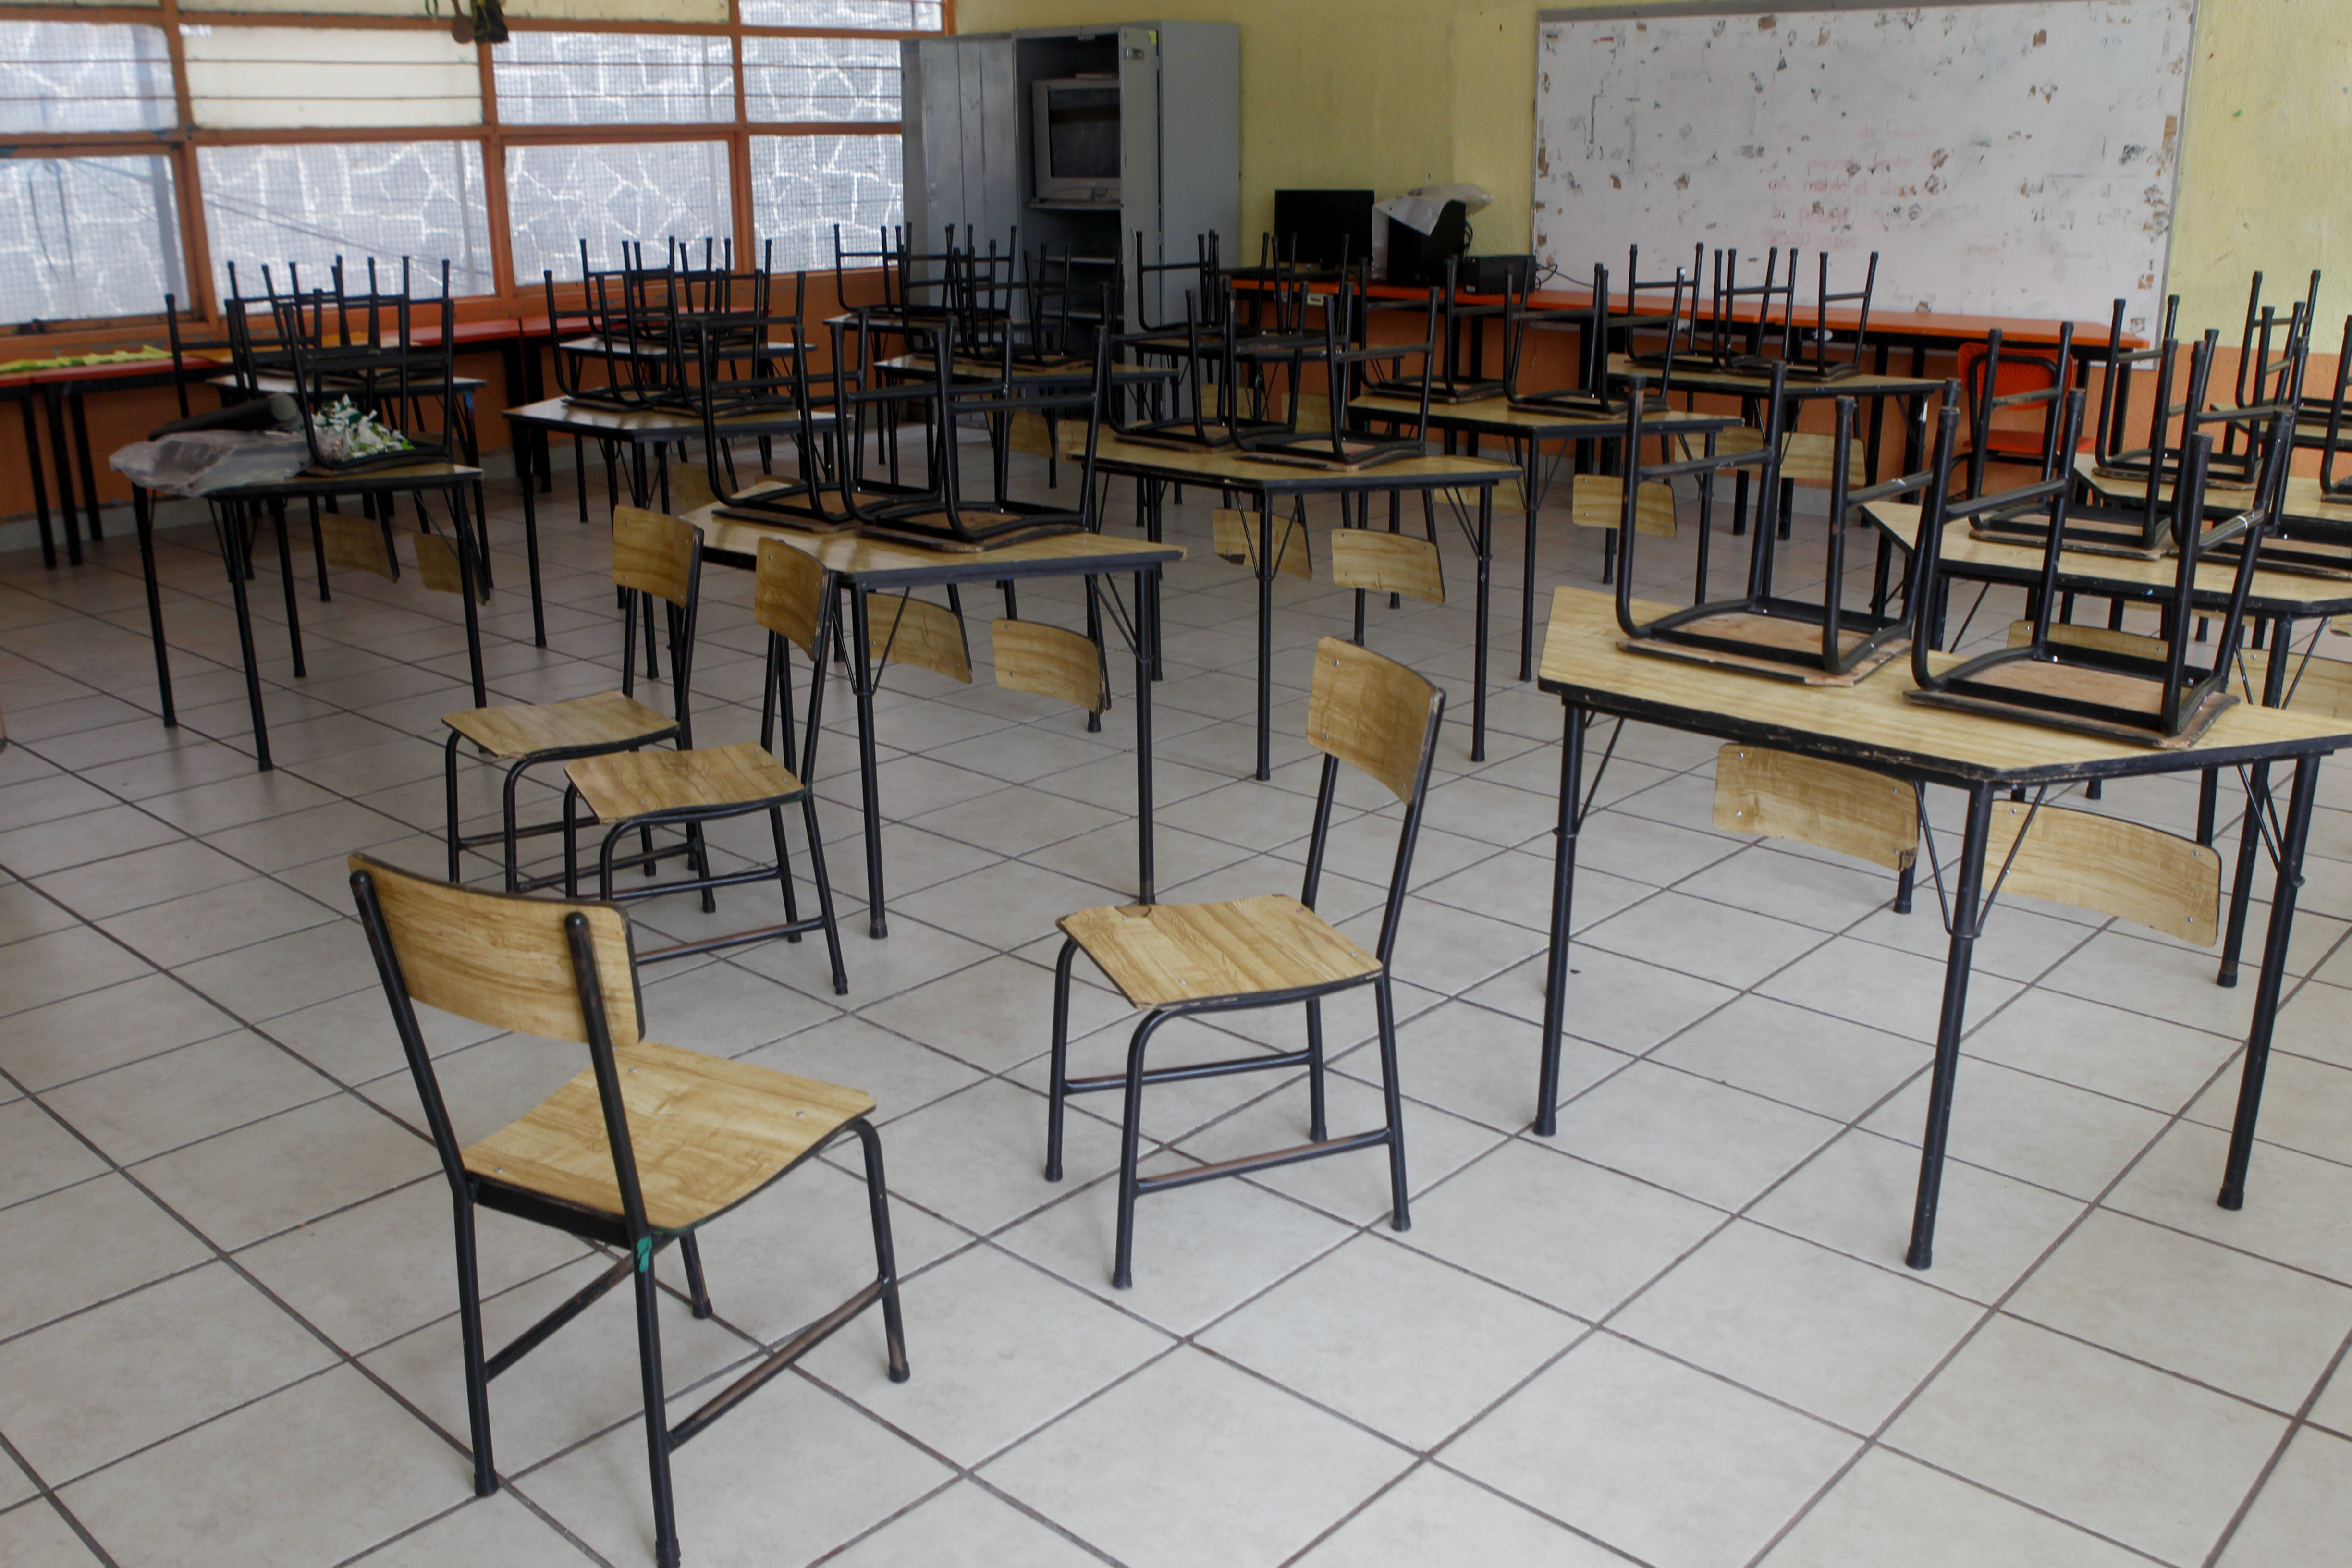 Ciudad de México, 27 agosto 2021.Salón de clases de una escuela primaria en CDMX previo al inicio del nuevo ciclo escolar. Foto: Karina Hernández / Infobae